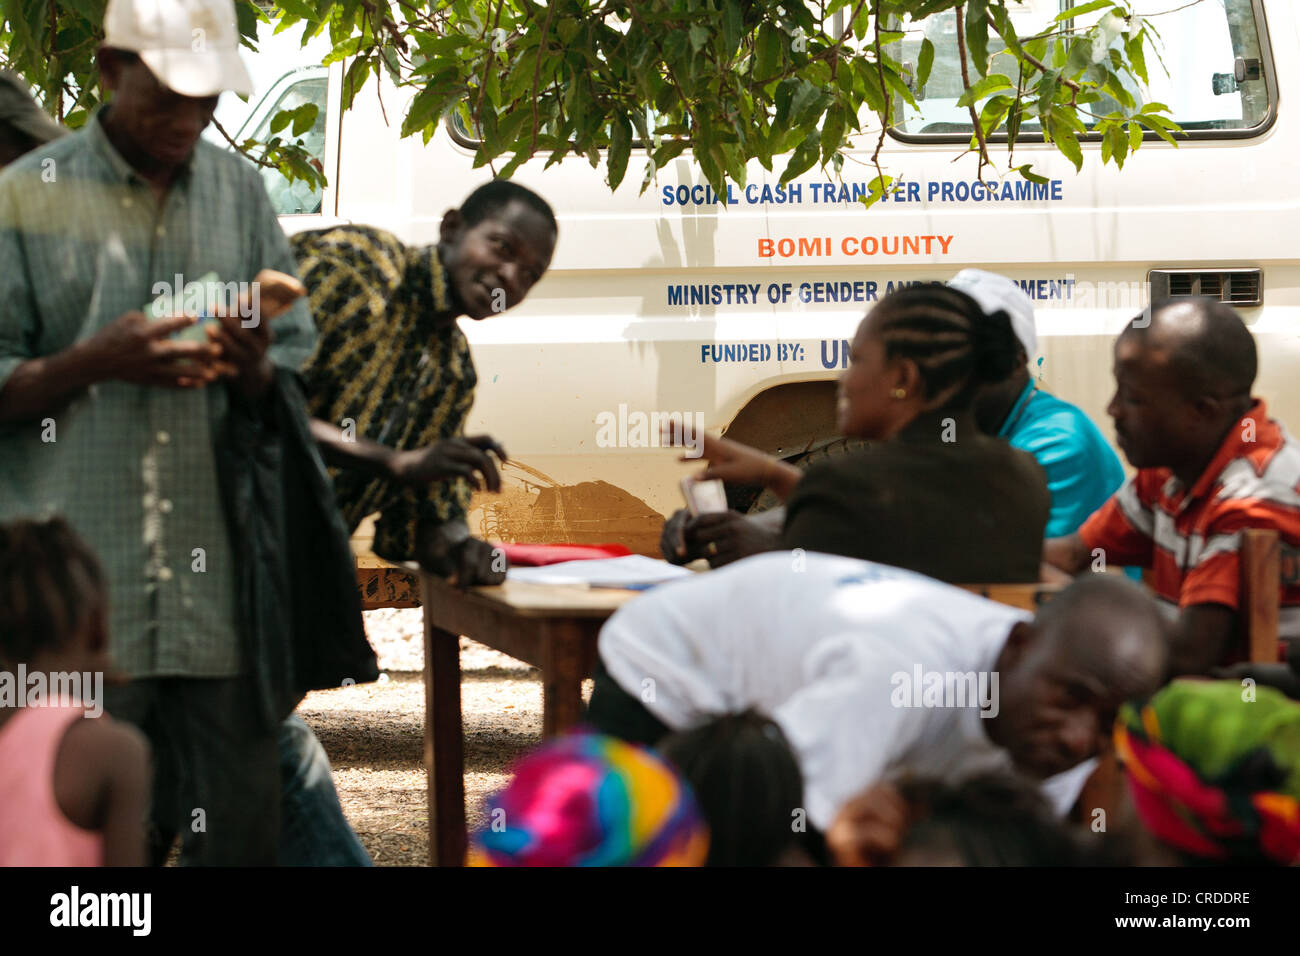 Geld ist an die Begünstigten während einer sozialen Cash Transfer Programm Distrubution im Dorf Julijuah, Liberia ausgehändigt Stockfoto